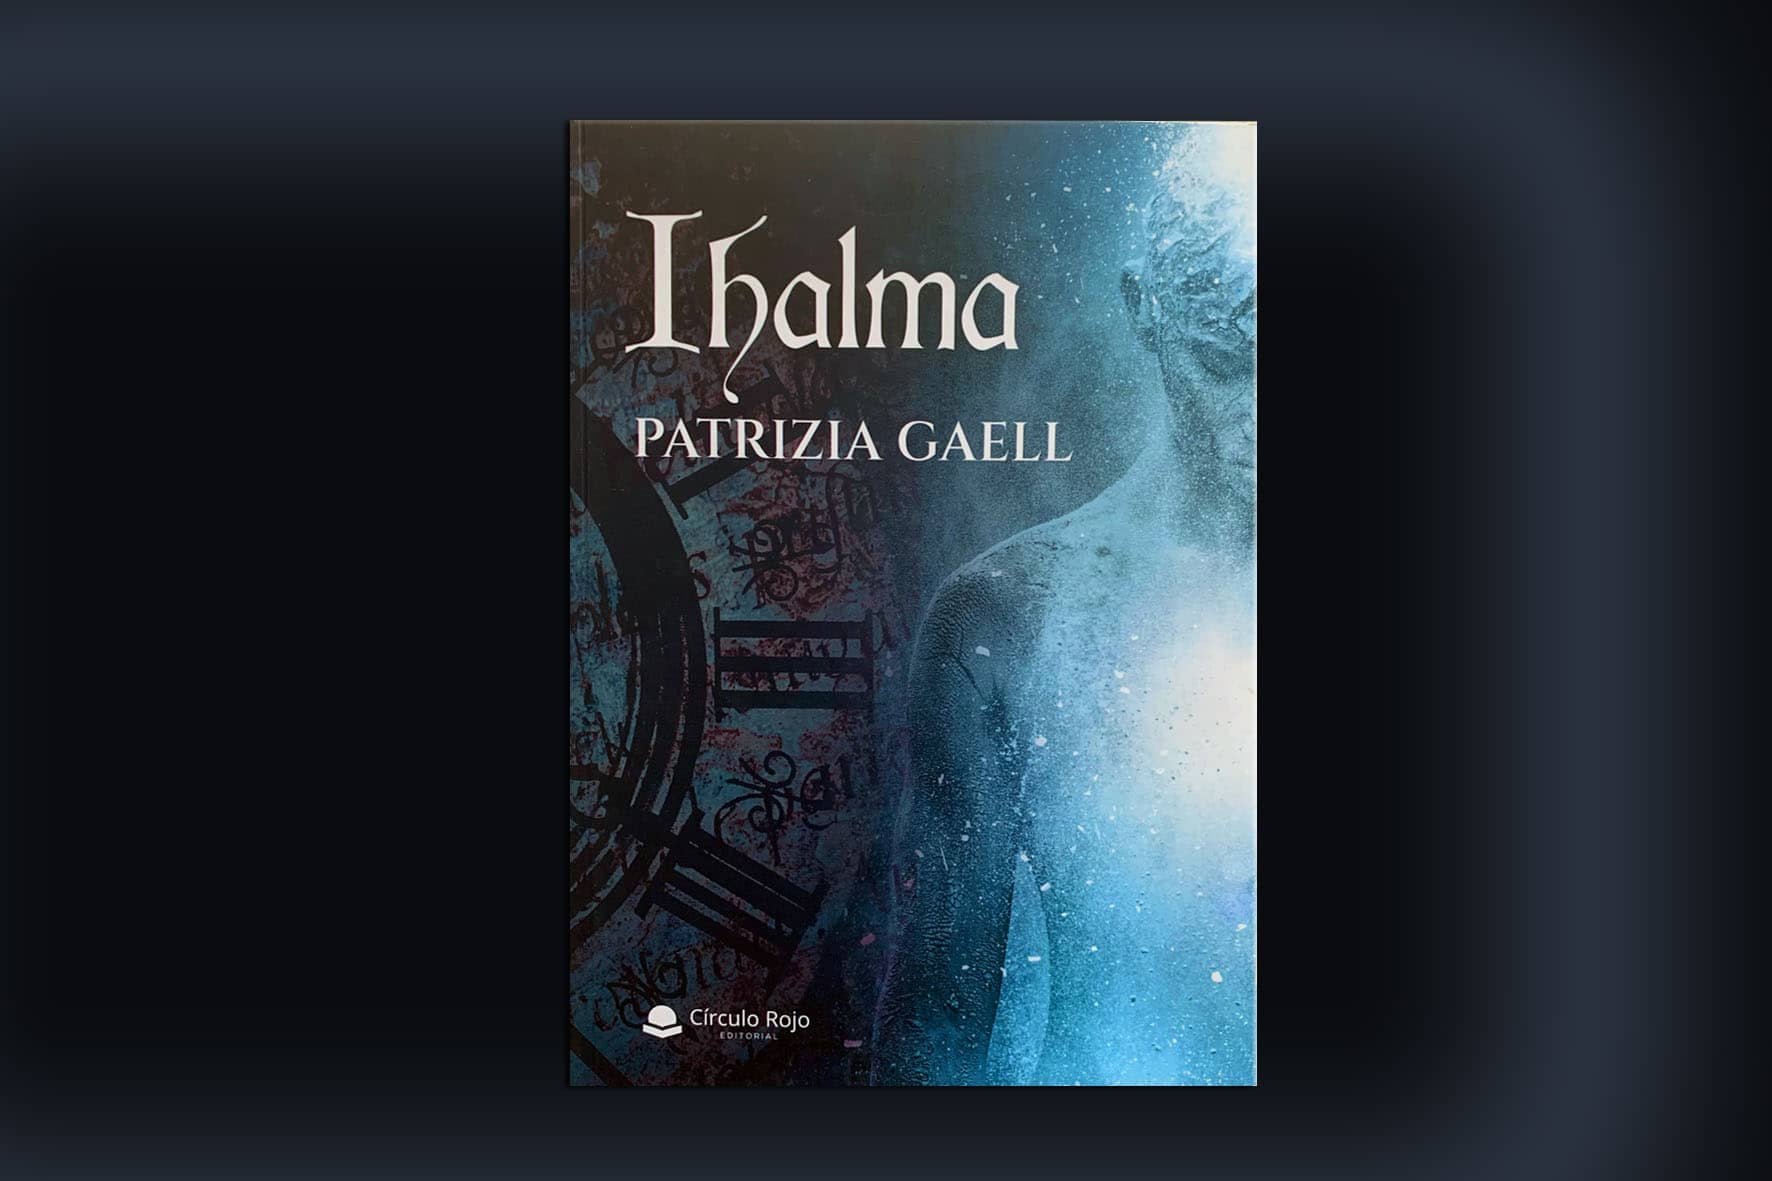 Patrizia Gaell, fascinante escritora, nos muestra su nueva obra «Ihalma»